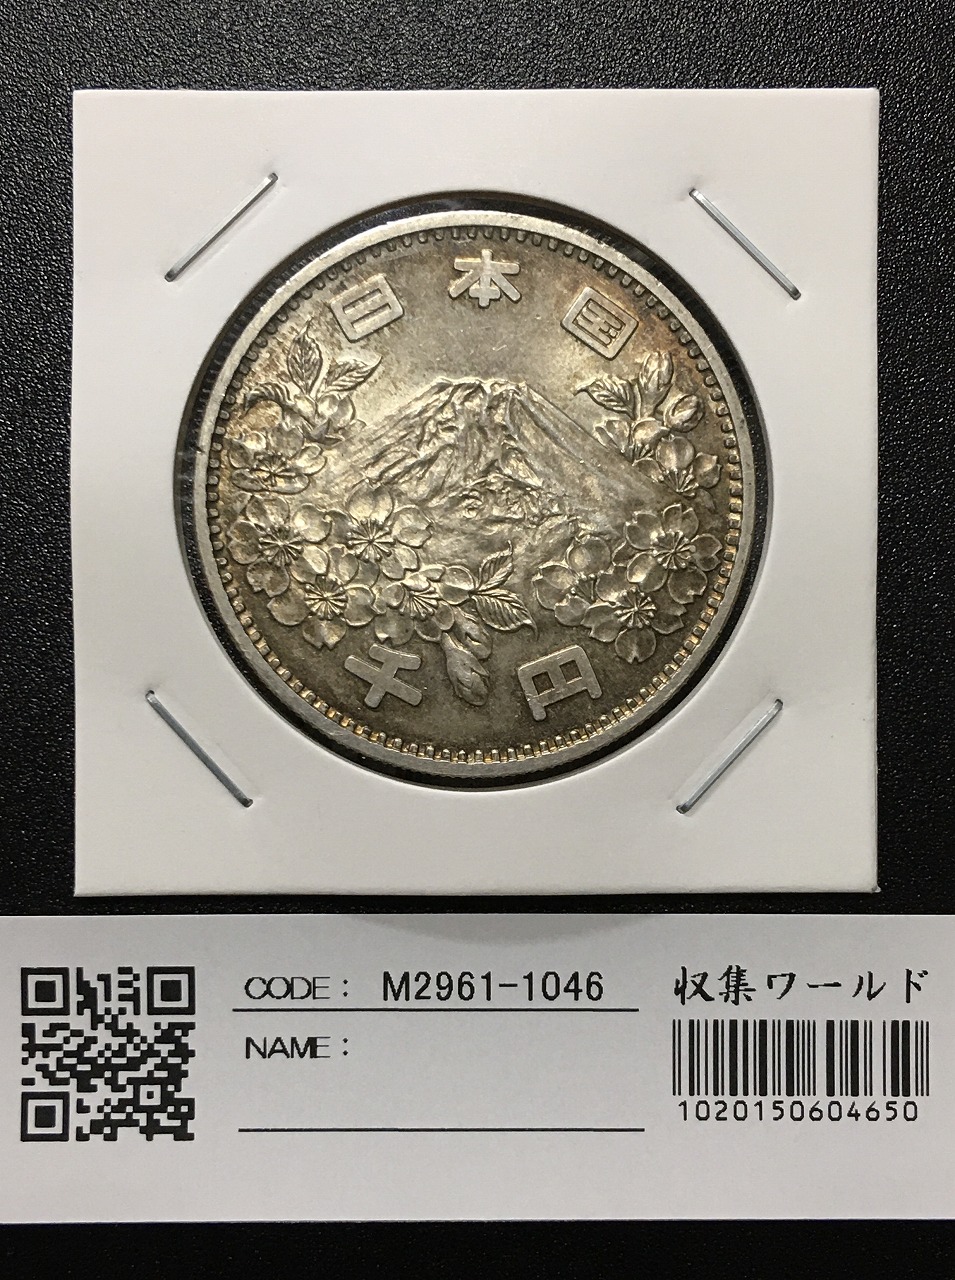 東京オリンピック記念 1964年(S39) 1000円銀貨 完未品-1046